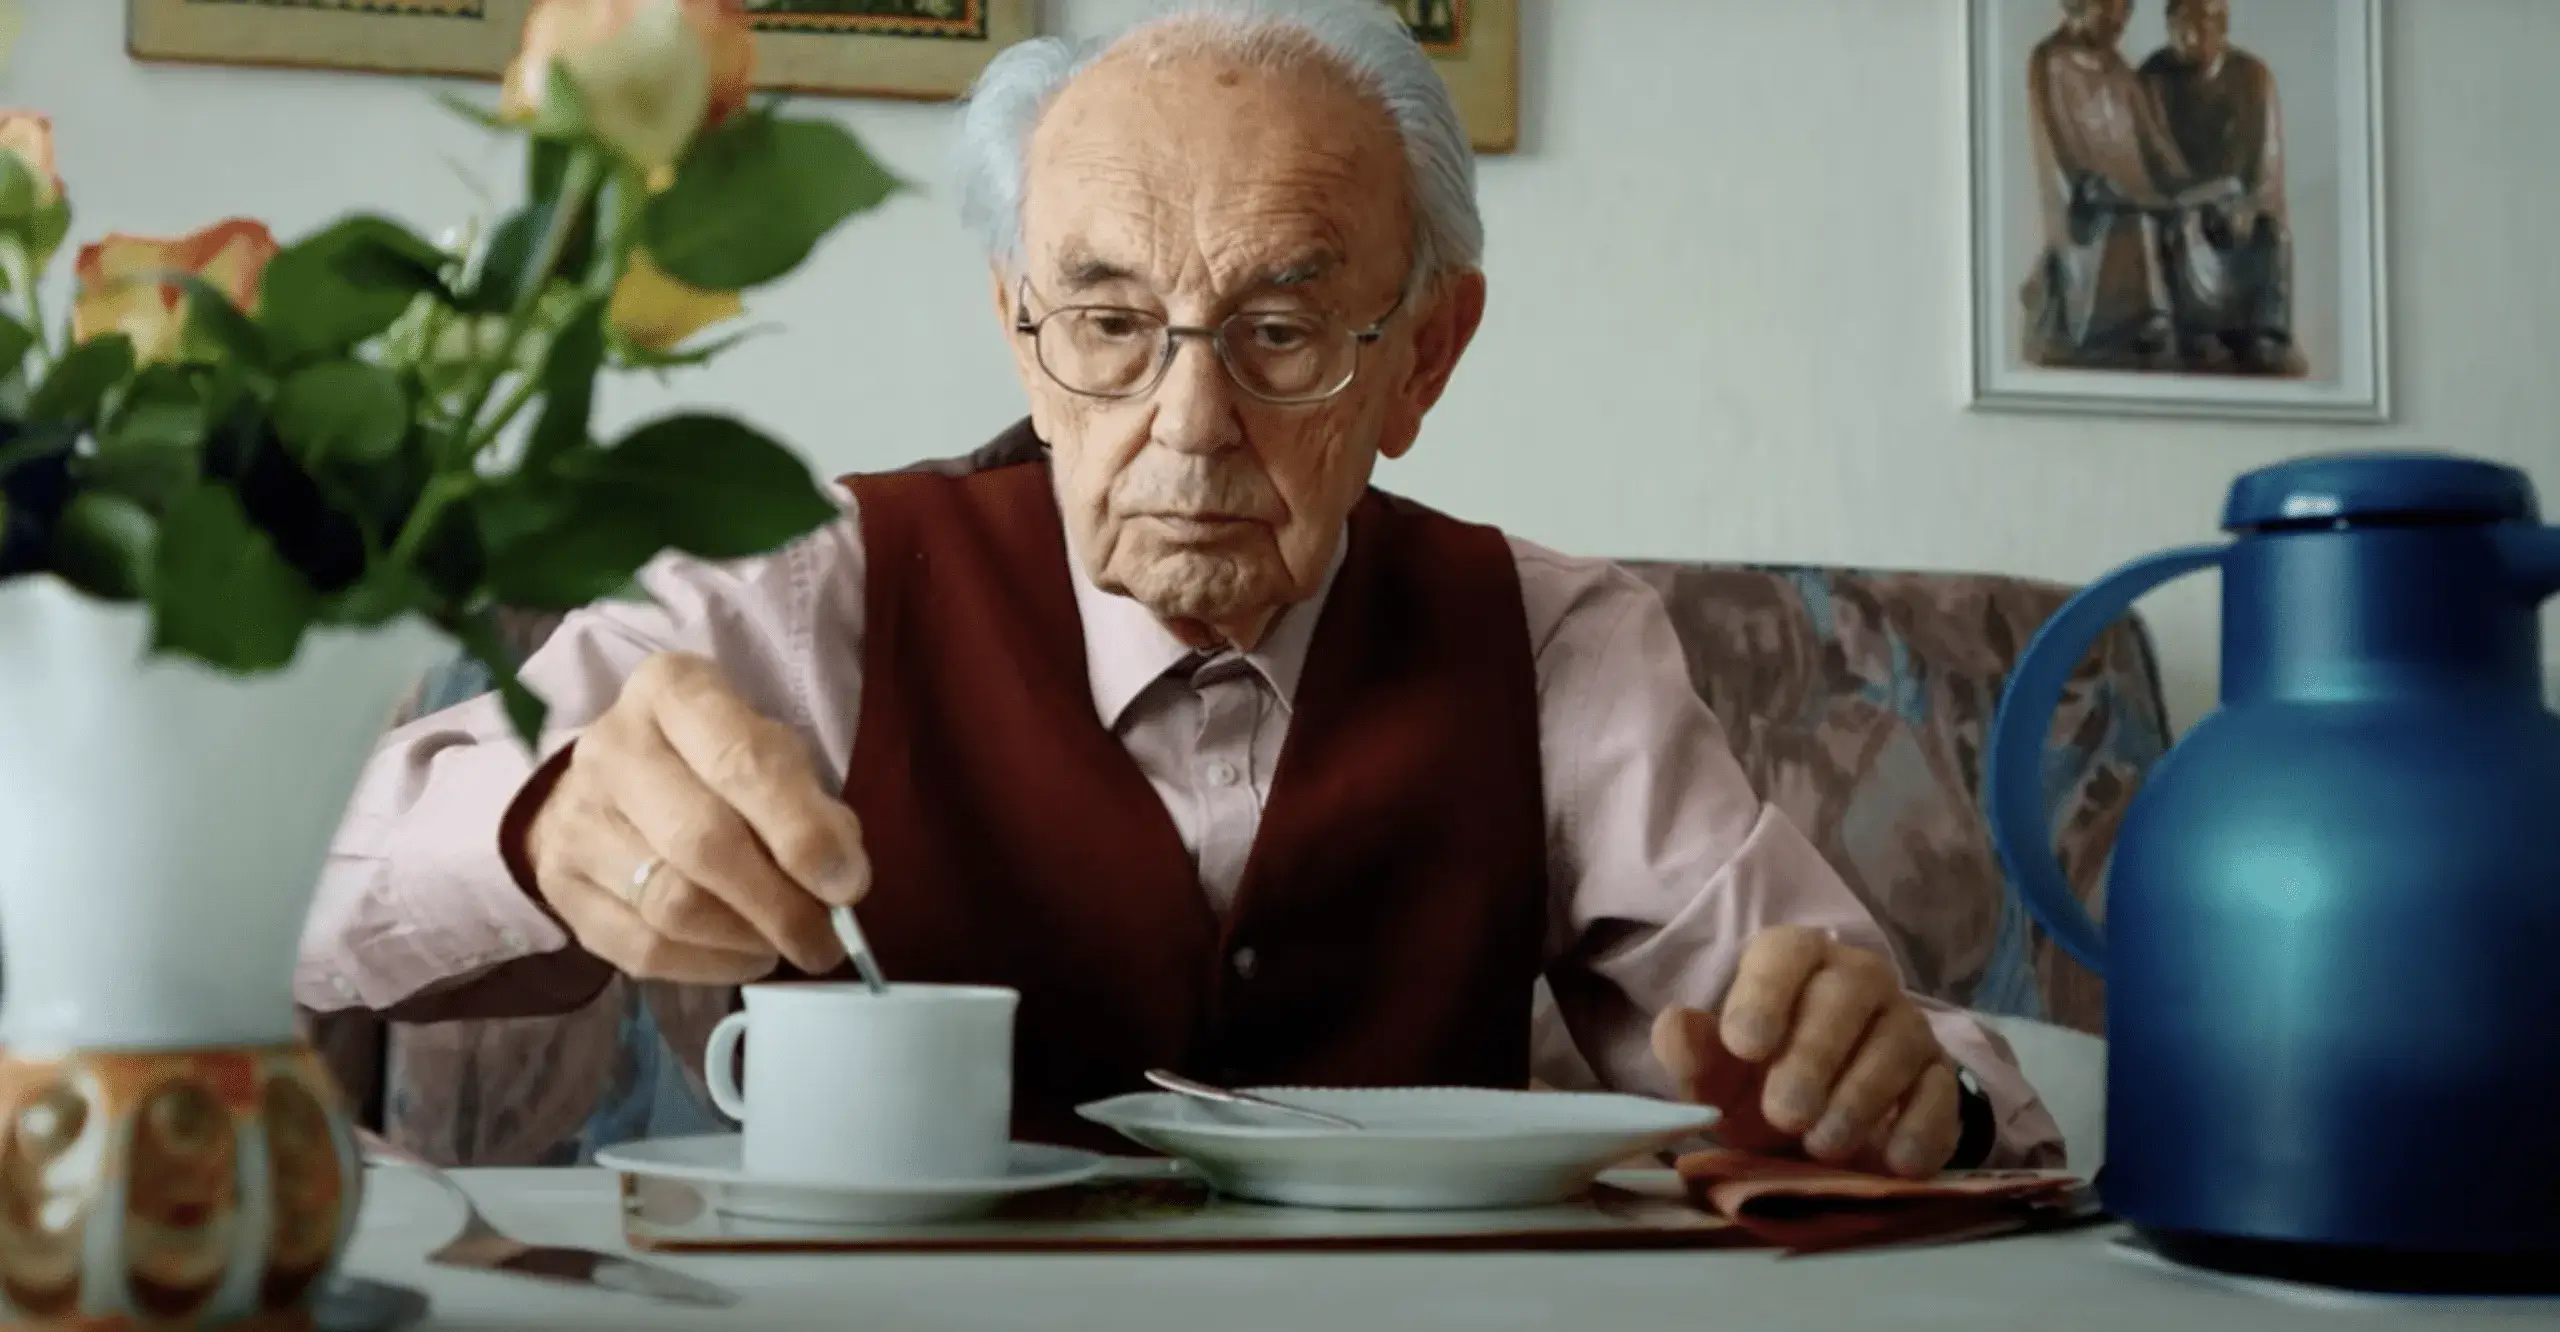 Old man taking tea